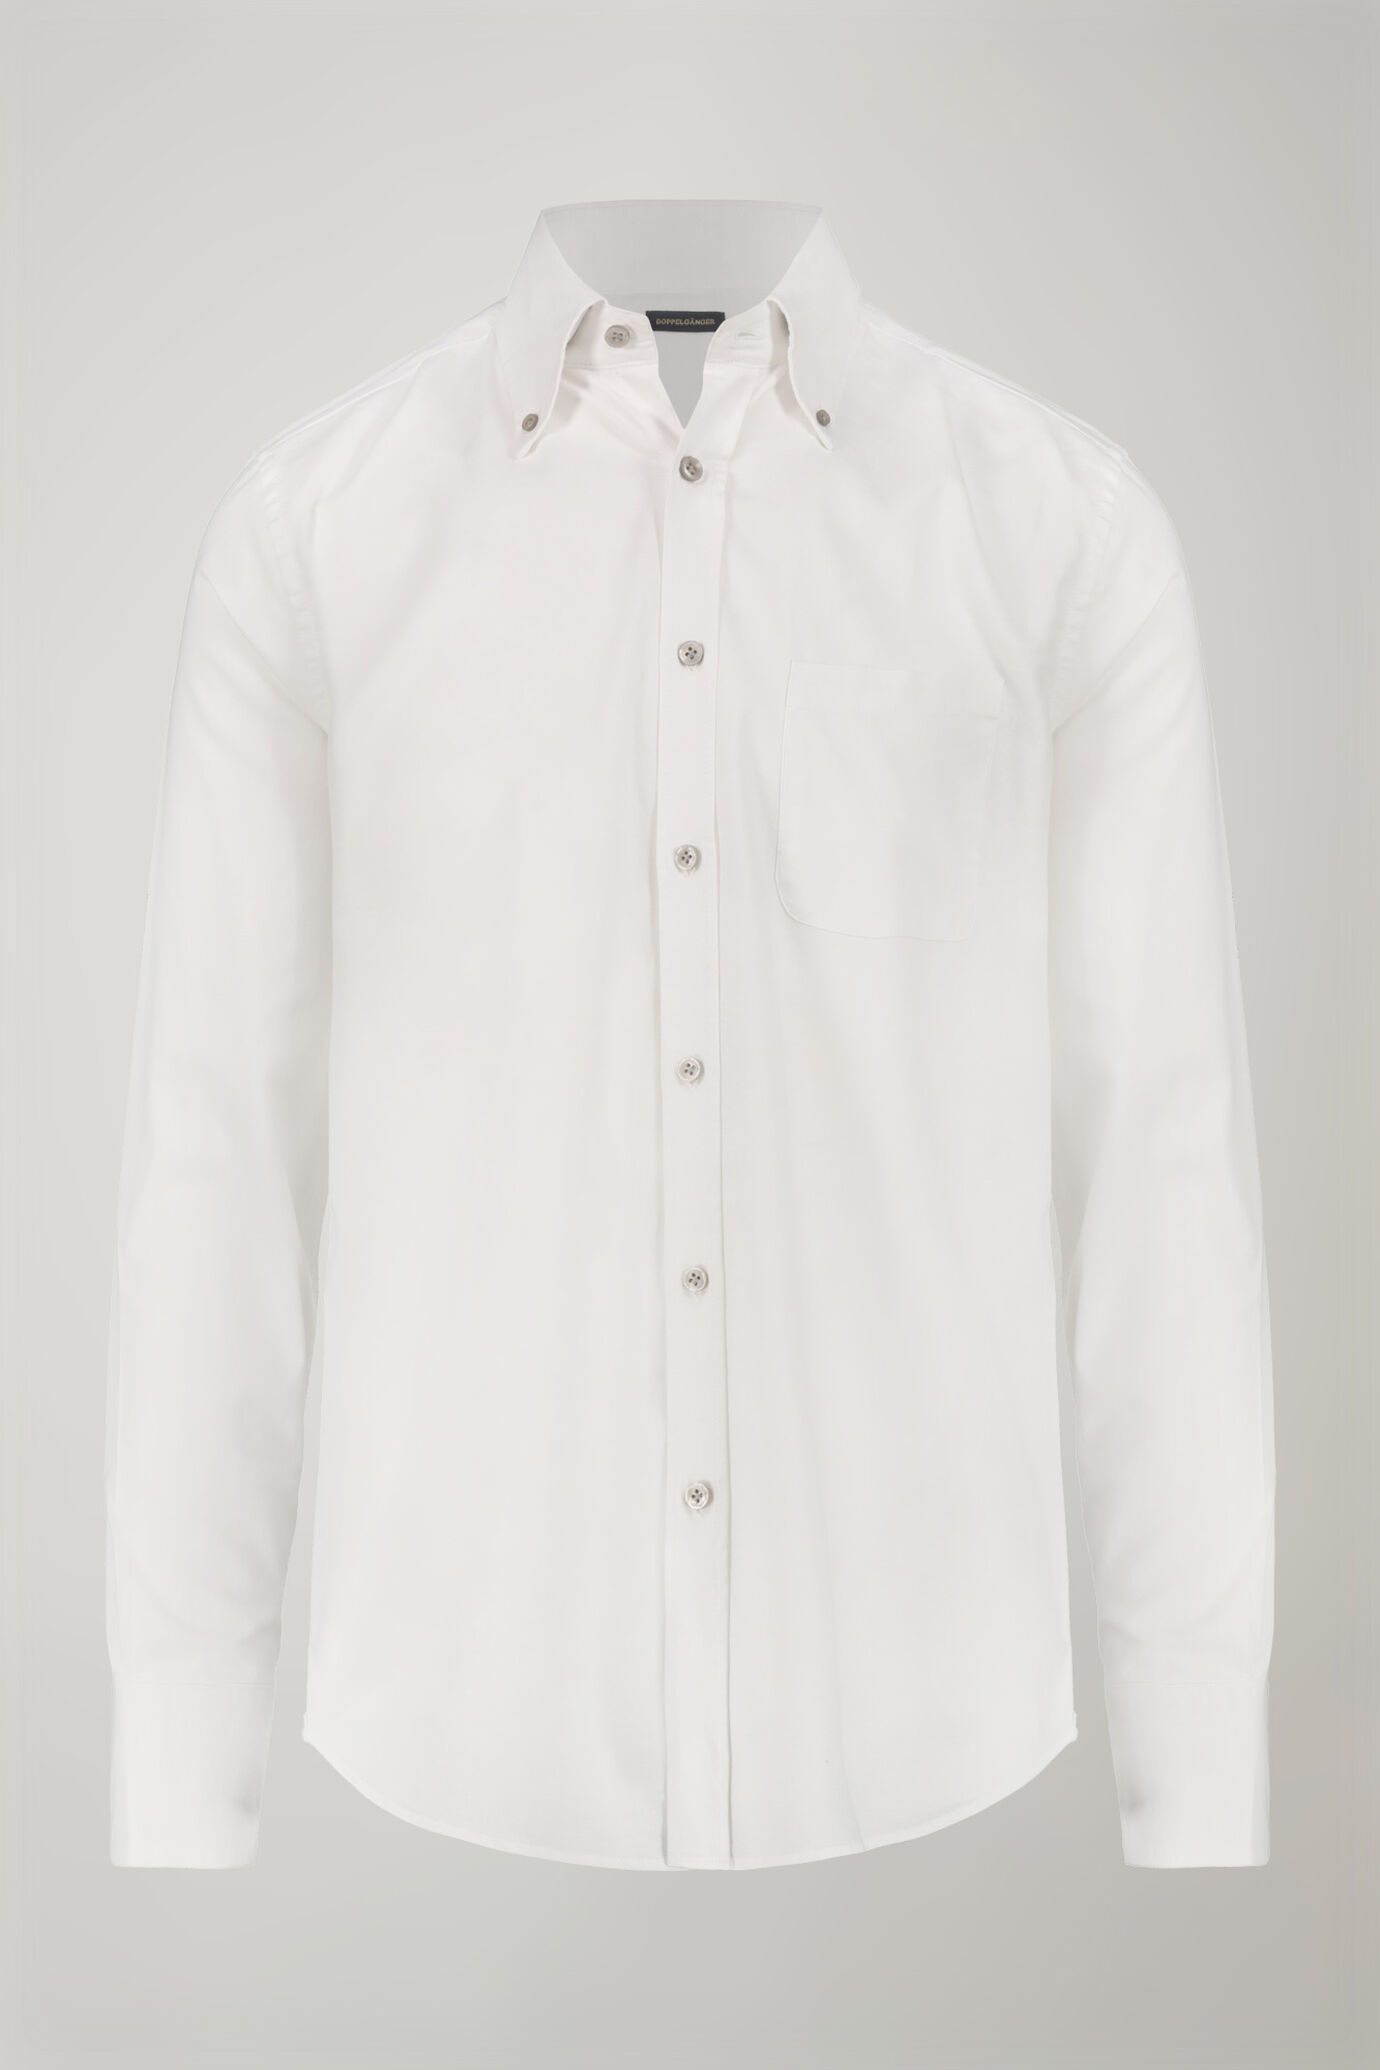 Camicia classica uomo collo button down tessuto Oxford rigato ultra leggero tinta unita comfort fit image number 5